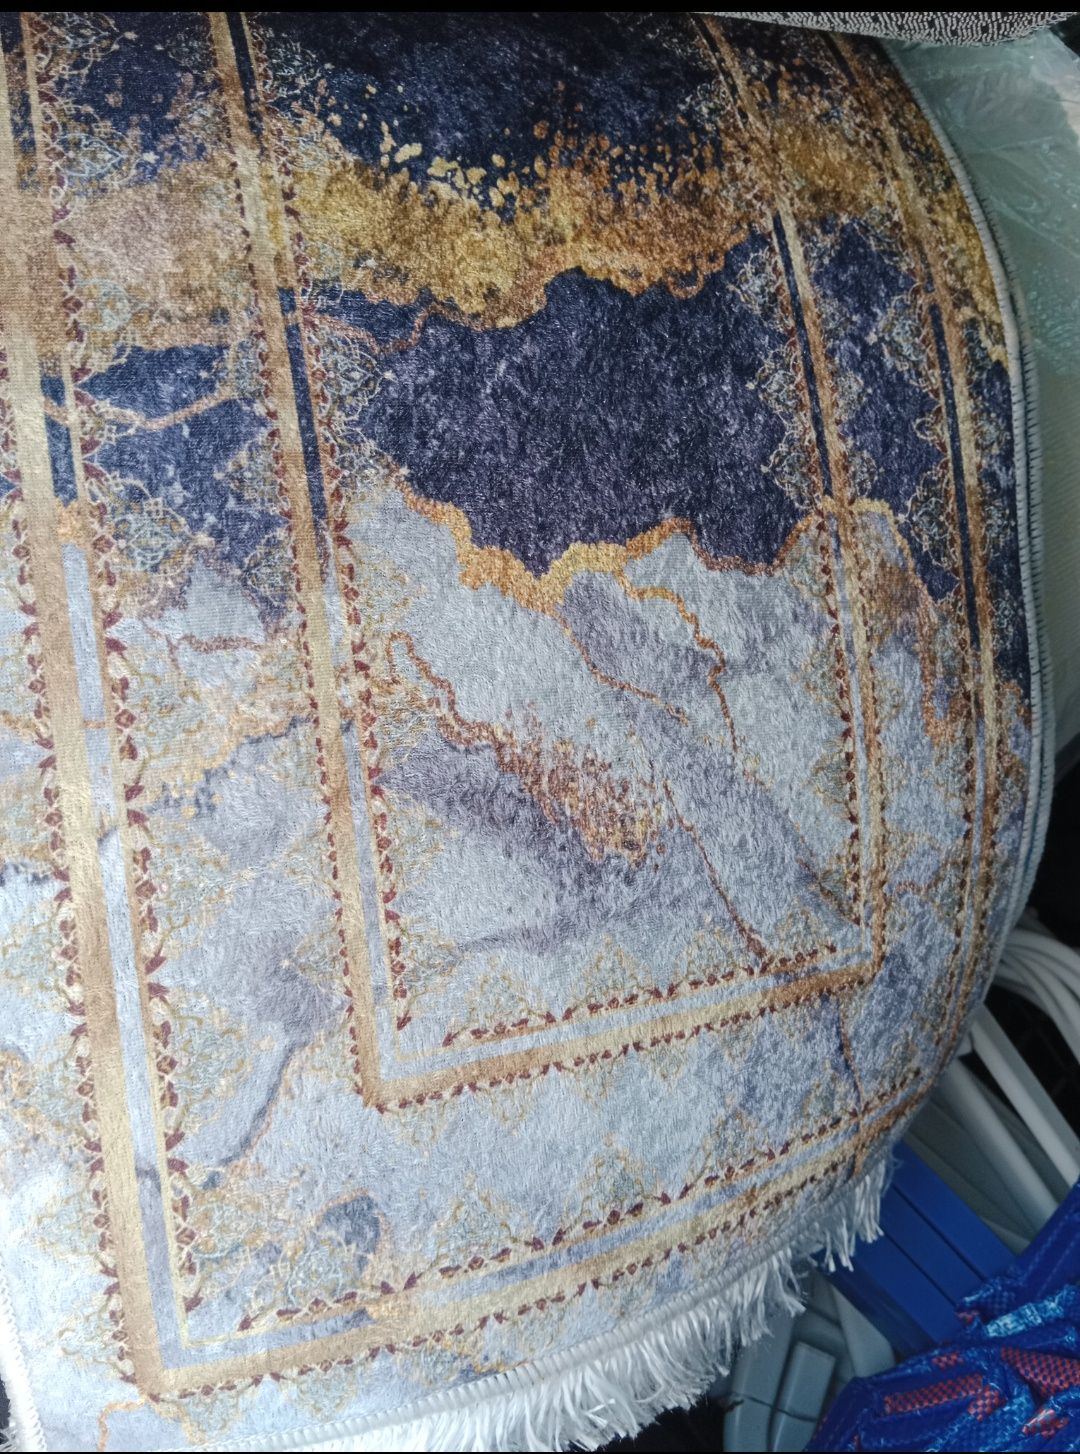 Nowe dywaniki 40x60cm 9 wzorów liście Versac marmur